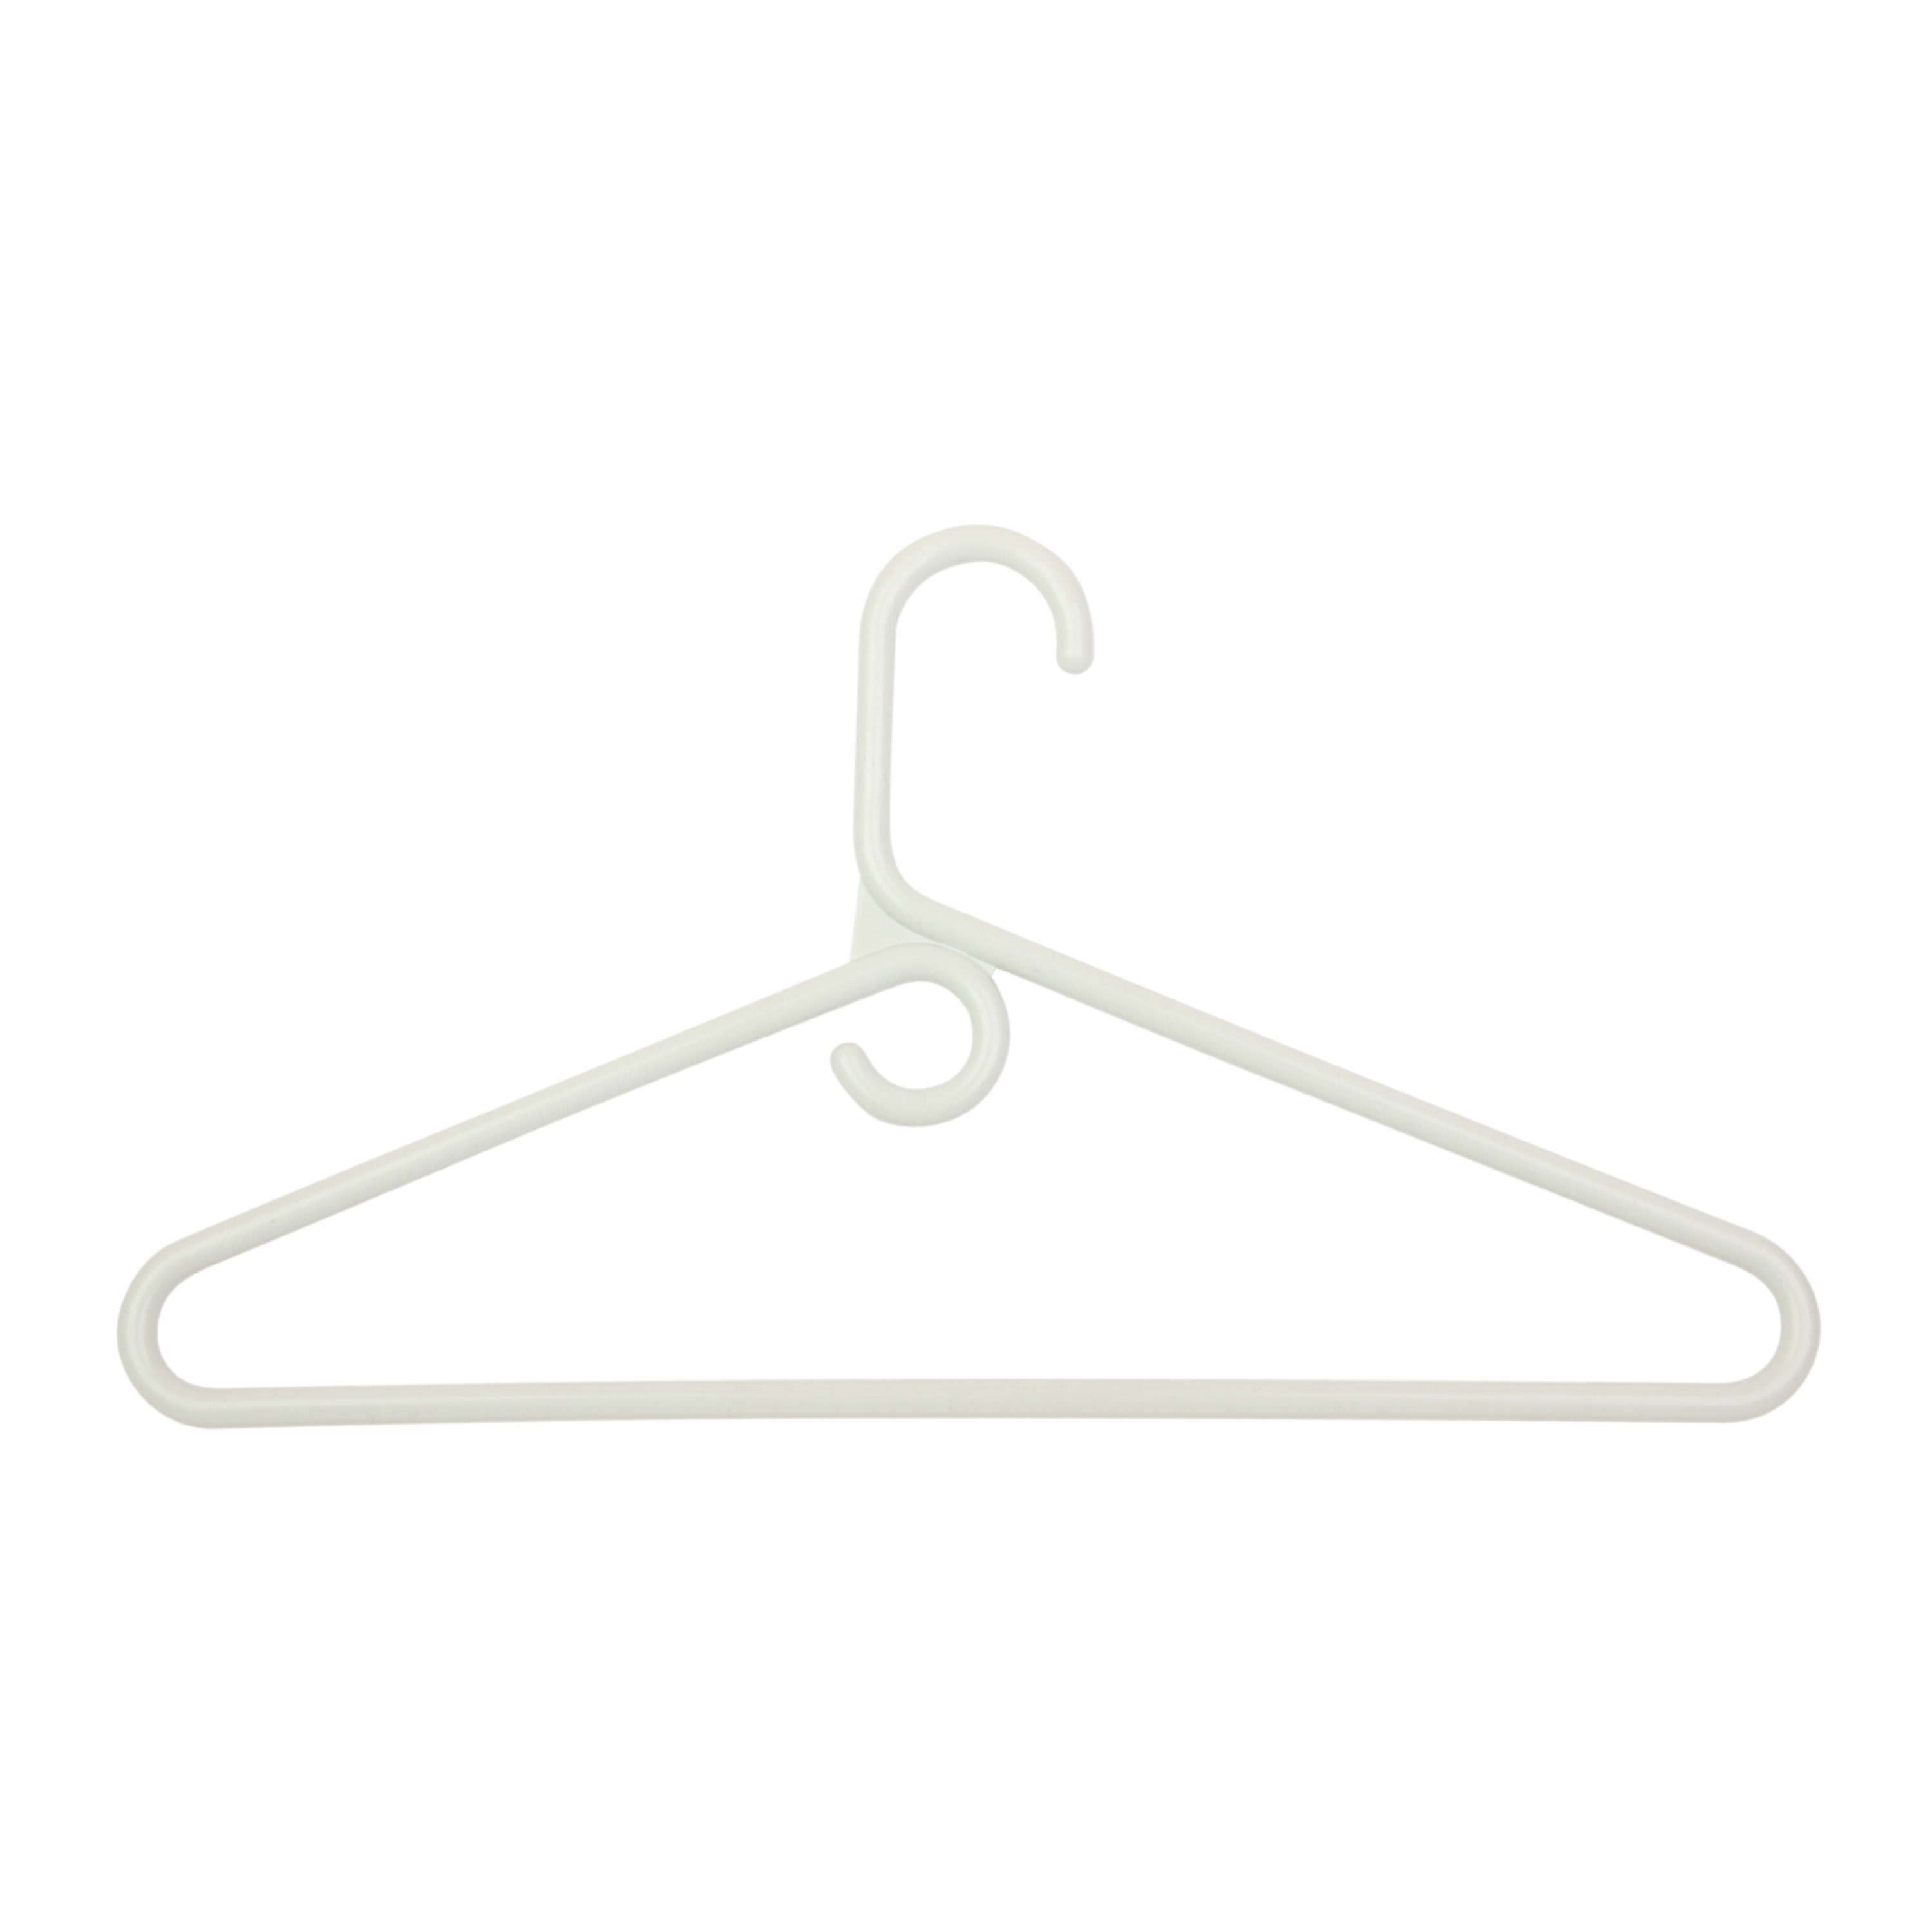 Merrick Plastic Clothing Hanger, 100 Pack, Artic White 